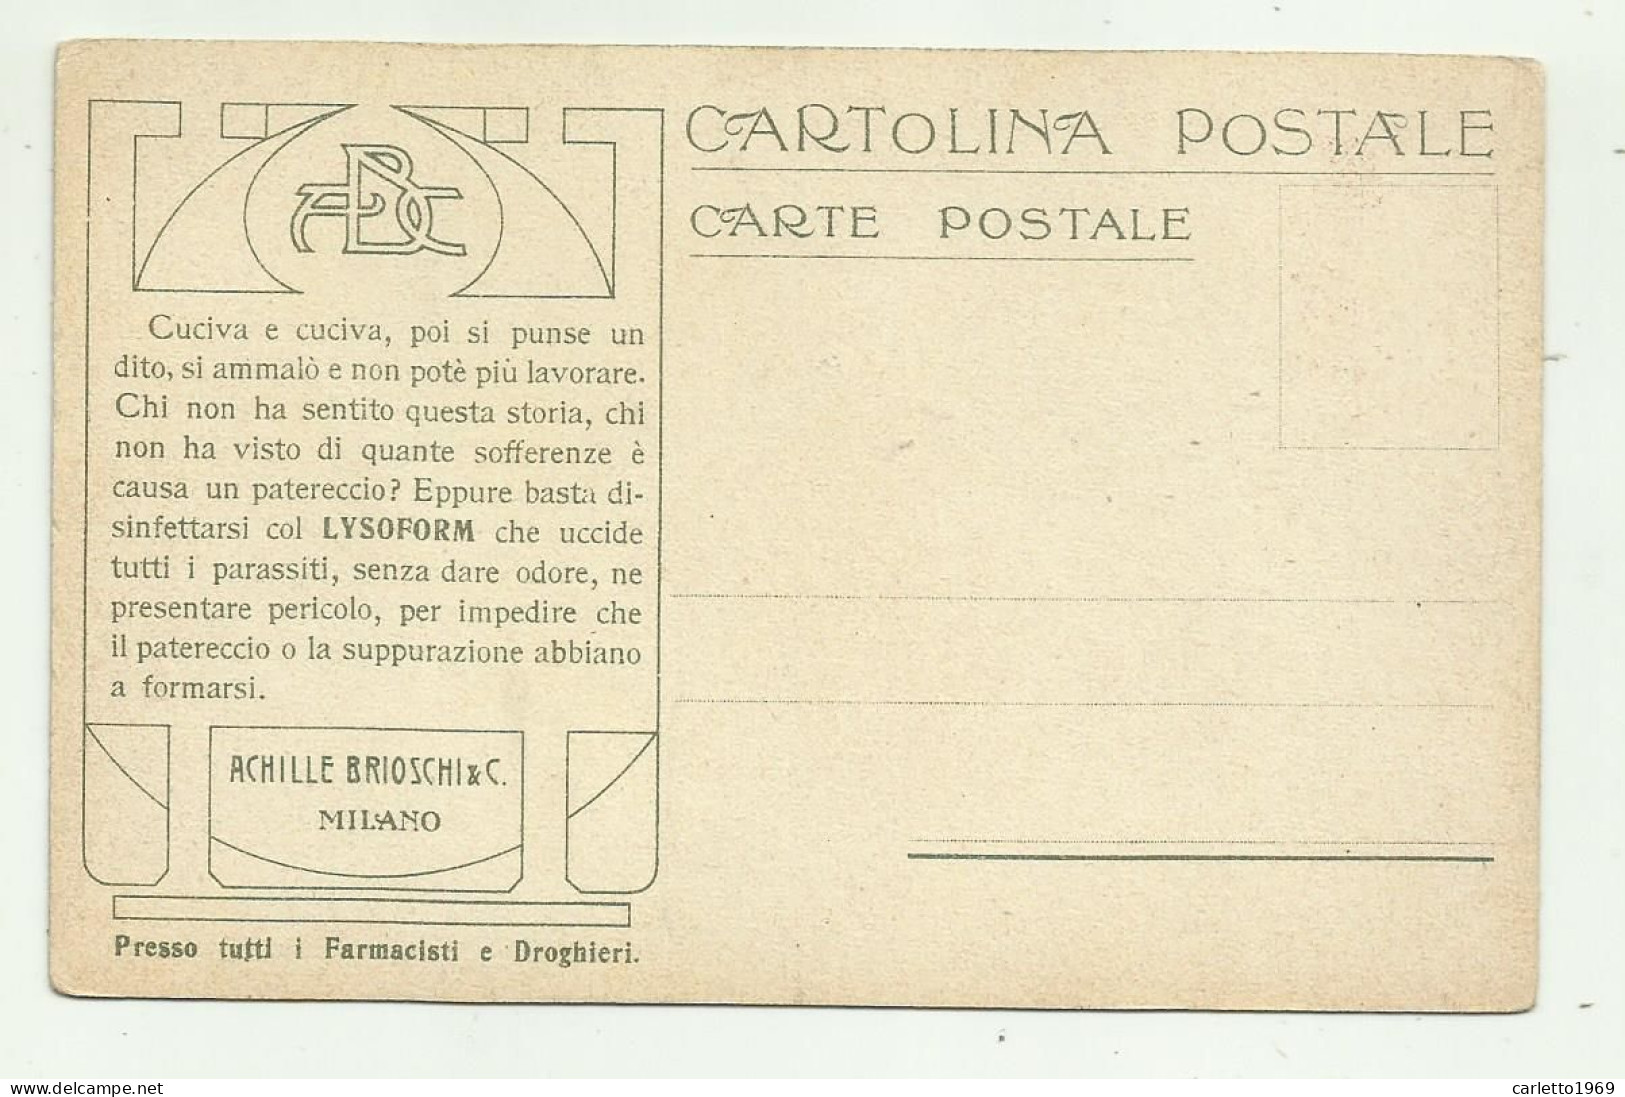 8 CARTOLINE LA POSTA IN - RETRO PUBBLICITA' ACHILLE BRIOSCHI & C. MILANO  - NV  FP - Postal Services